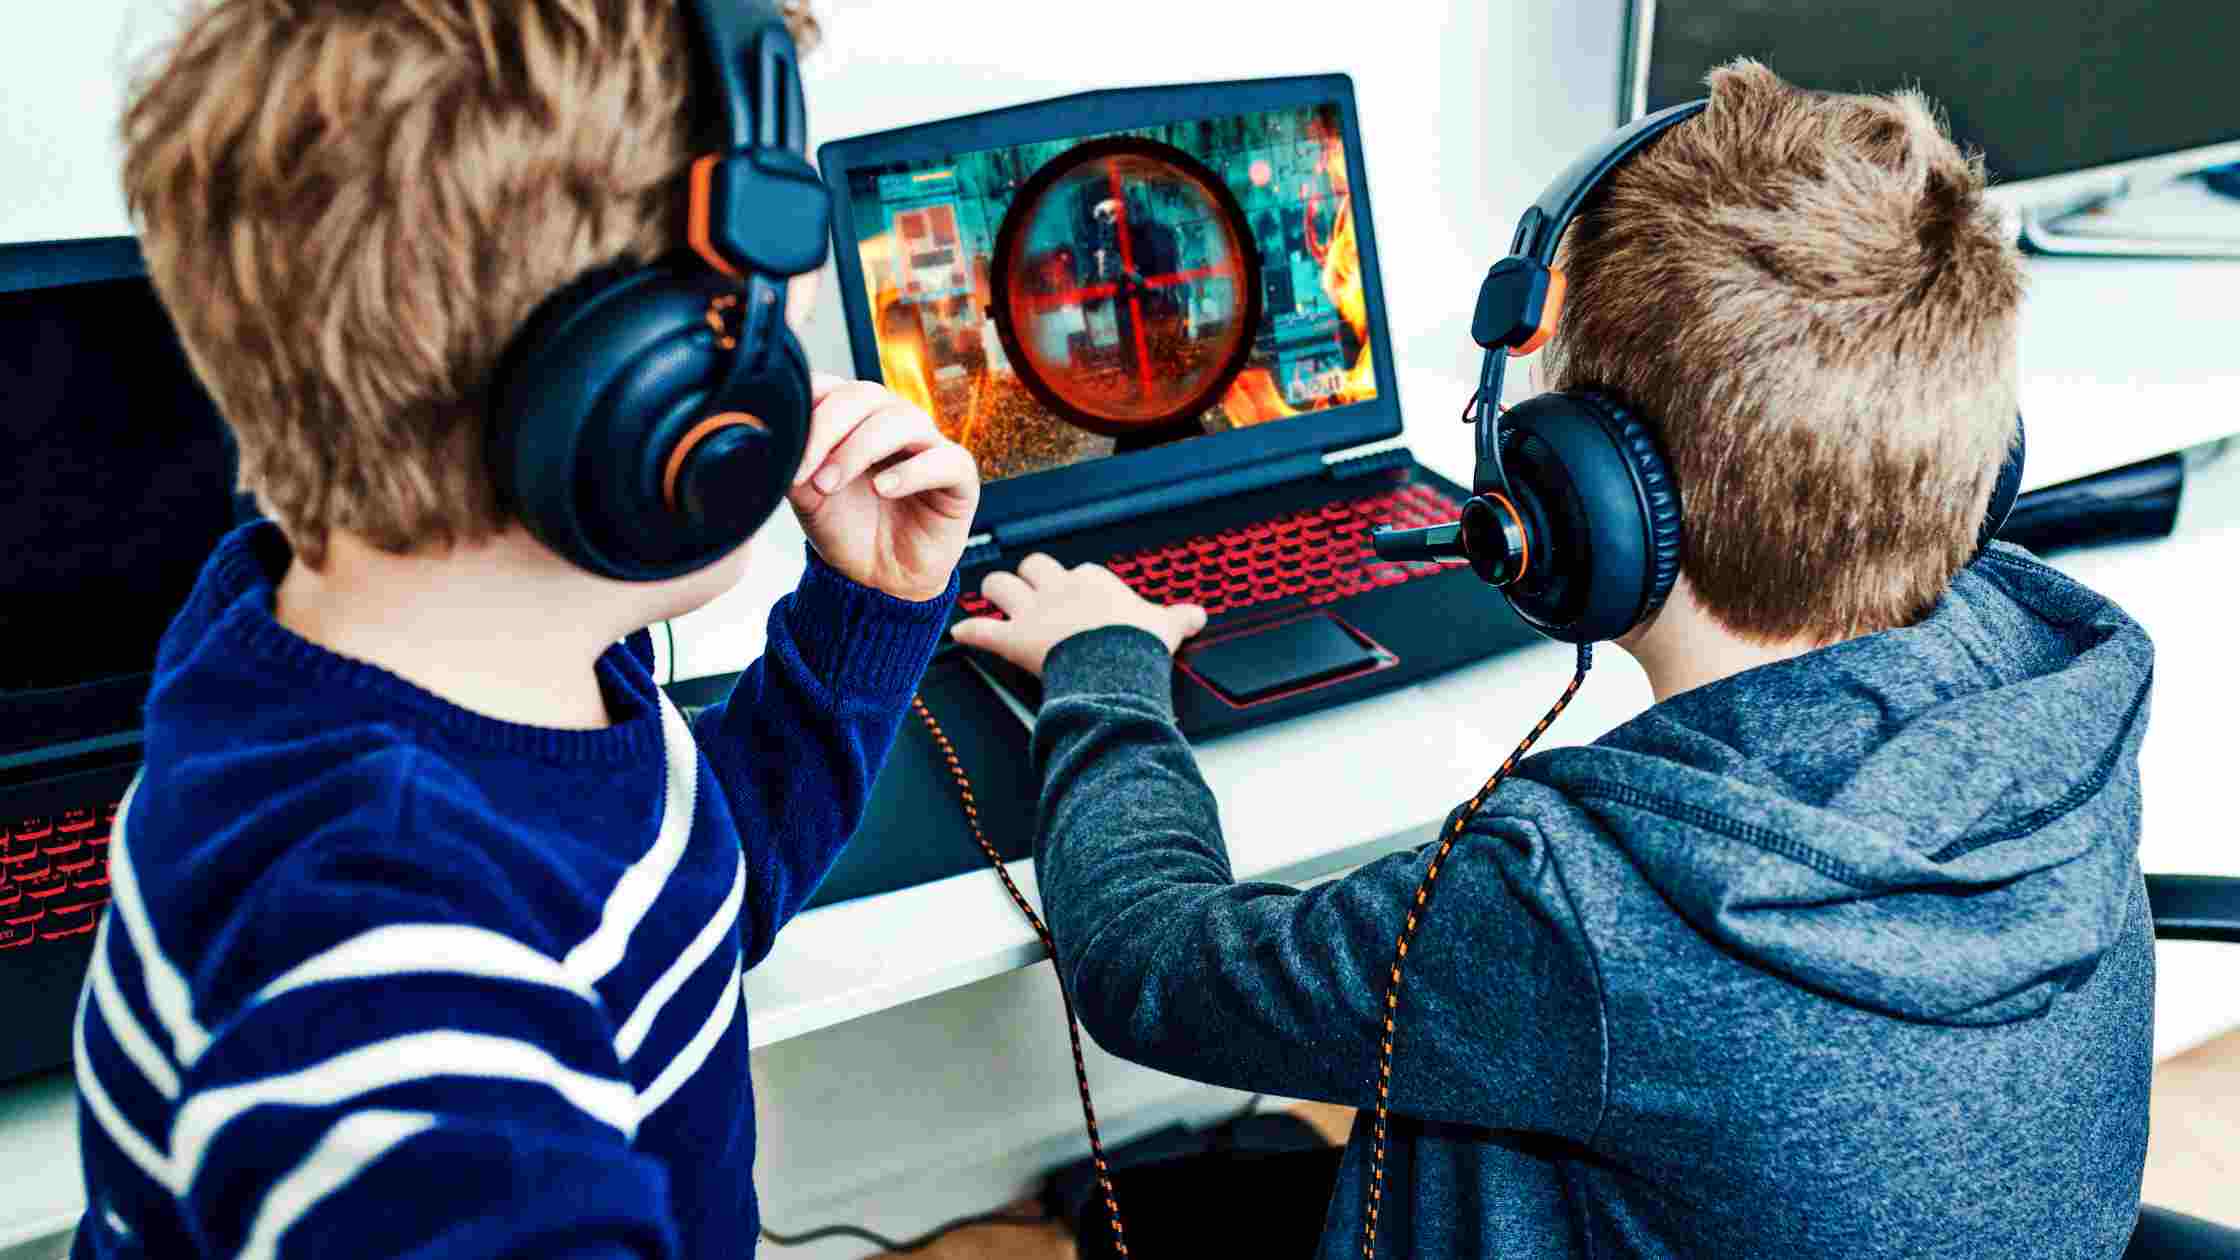 Детские игры на ноутбуке. Компьютерные игры для детей. Дети играющие в компьютерные игры. Ребенок геймер. Дети за компьютерными играми.